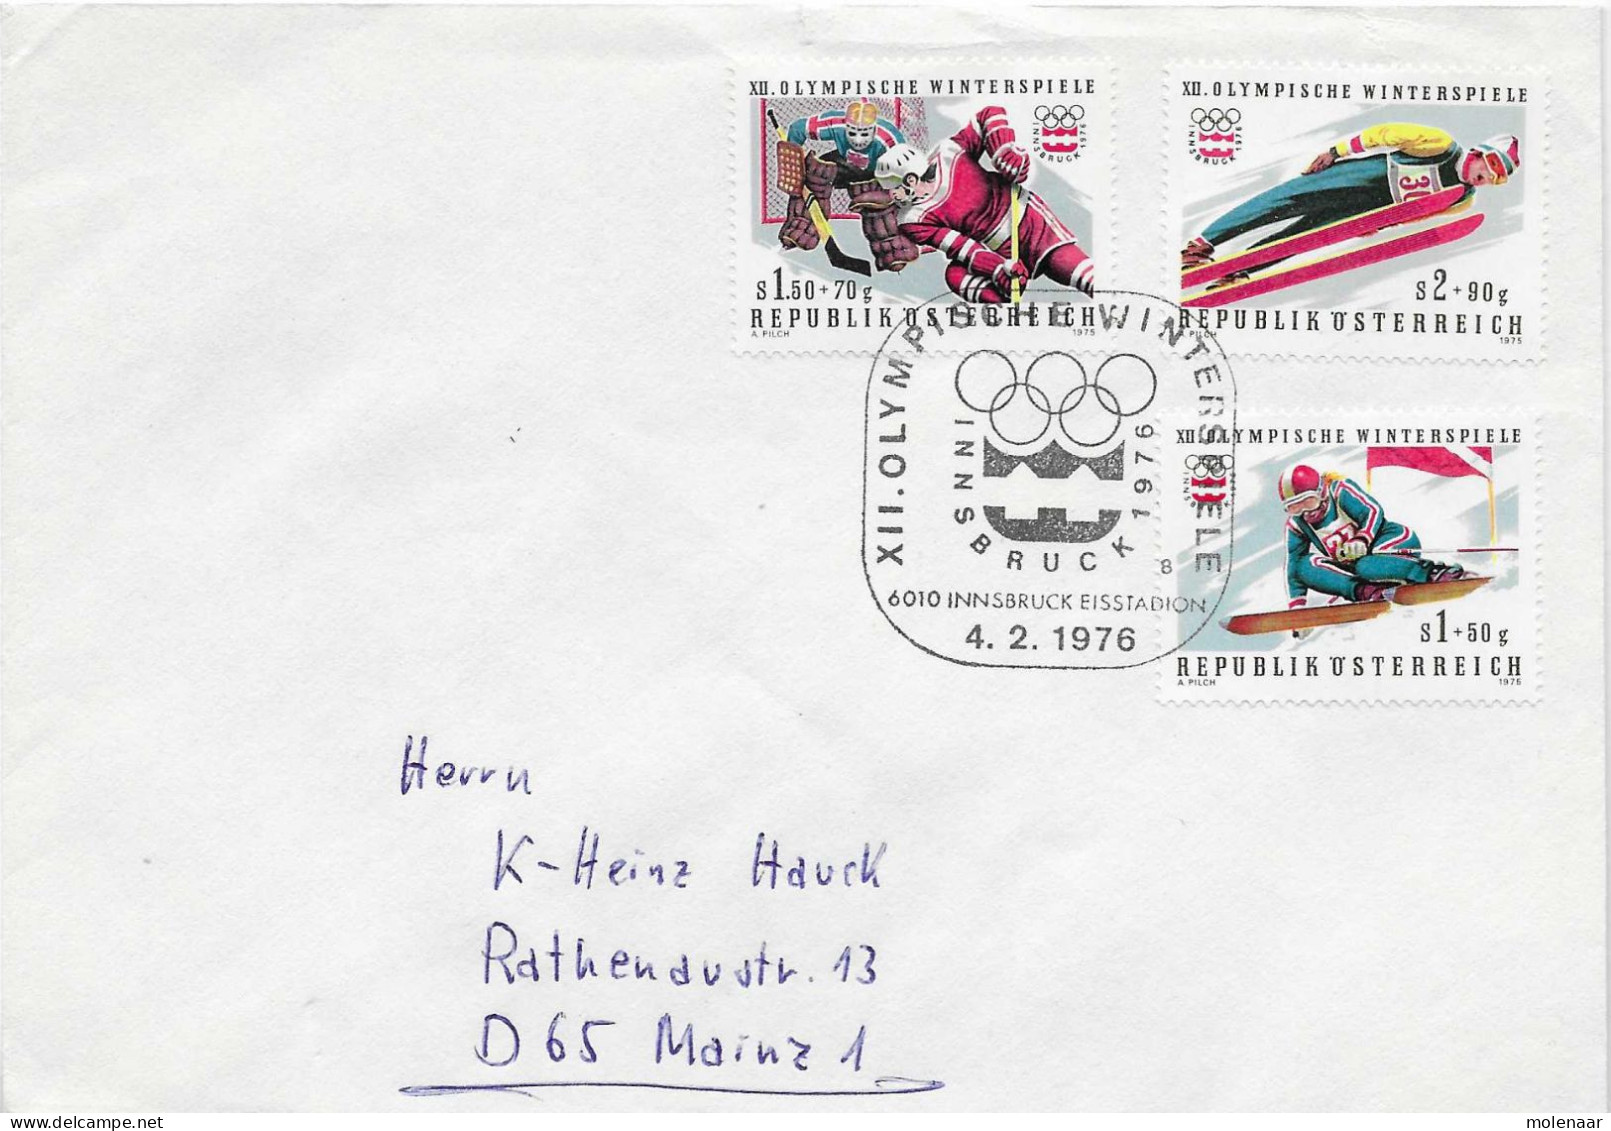 Postzegels > Europa > Oostenrijk > 1945-.... 2de Republiek > 1971-1980 > Brief Met 1522-1524 (17761) - Covers & Documents